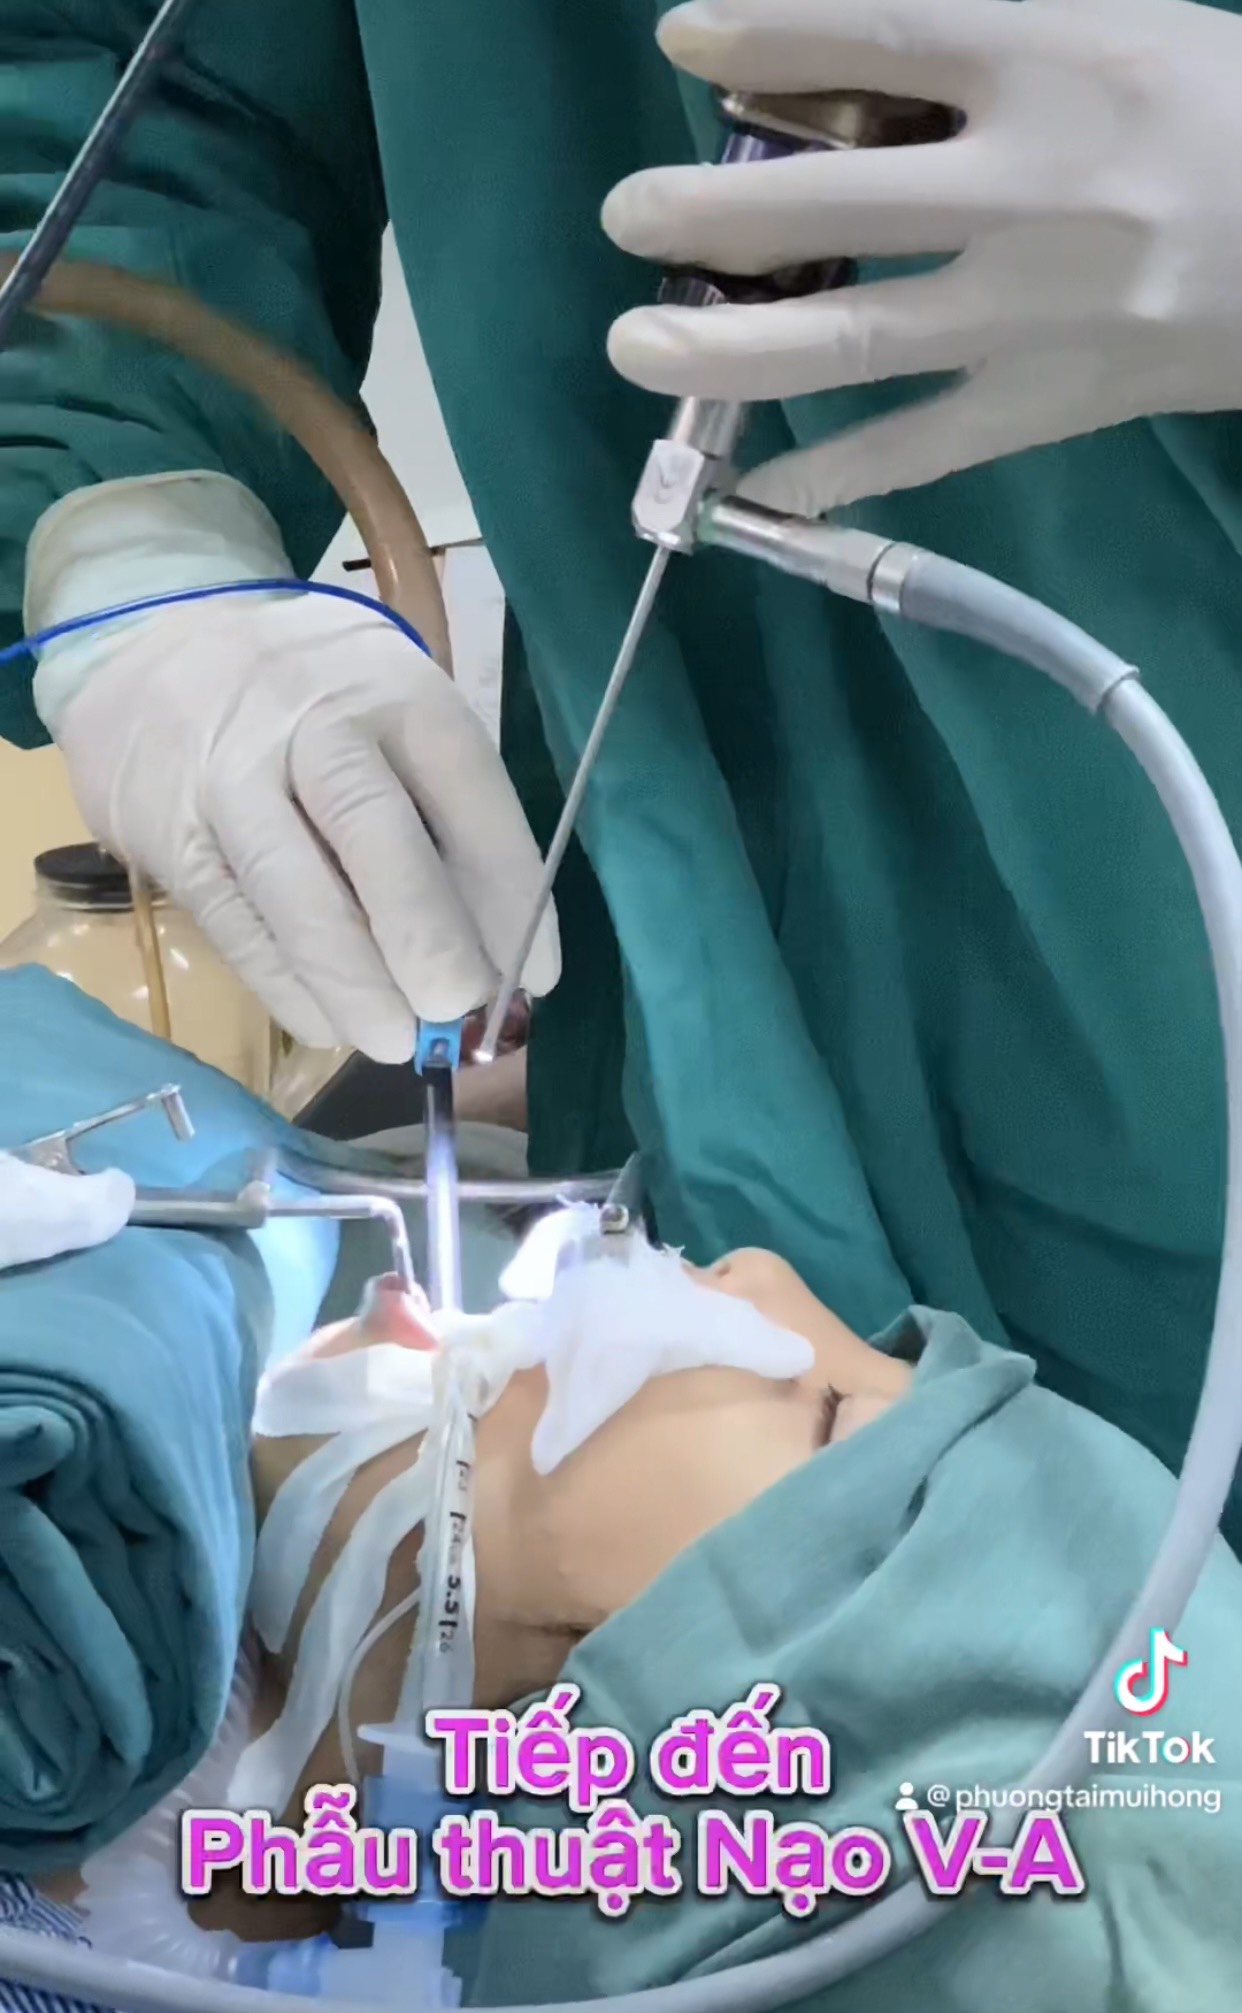 phẫu thuật điều trị 2 trong 1: nạo VA và cắt Amidan cho trẻ từ 3 tuổi với sự hỗ trợ chuyên môn của Bác sĩ chuyên gia Tai Mũi Họng đến từ Bệnh viện đầu ngành Tai Mũi Họng Việt nam – Cu Ba.